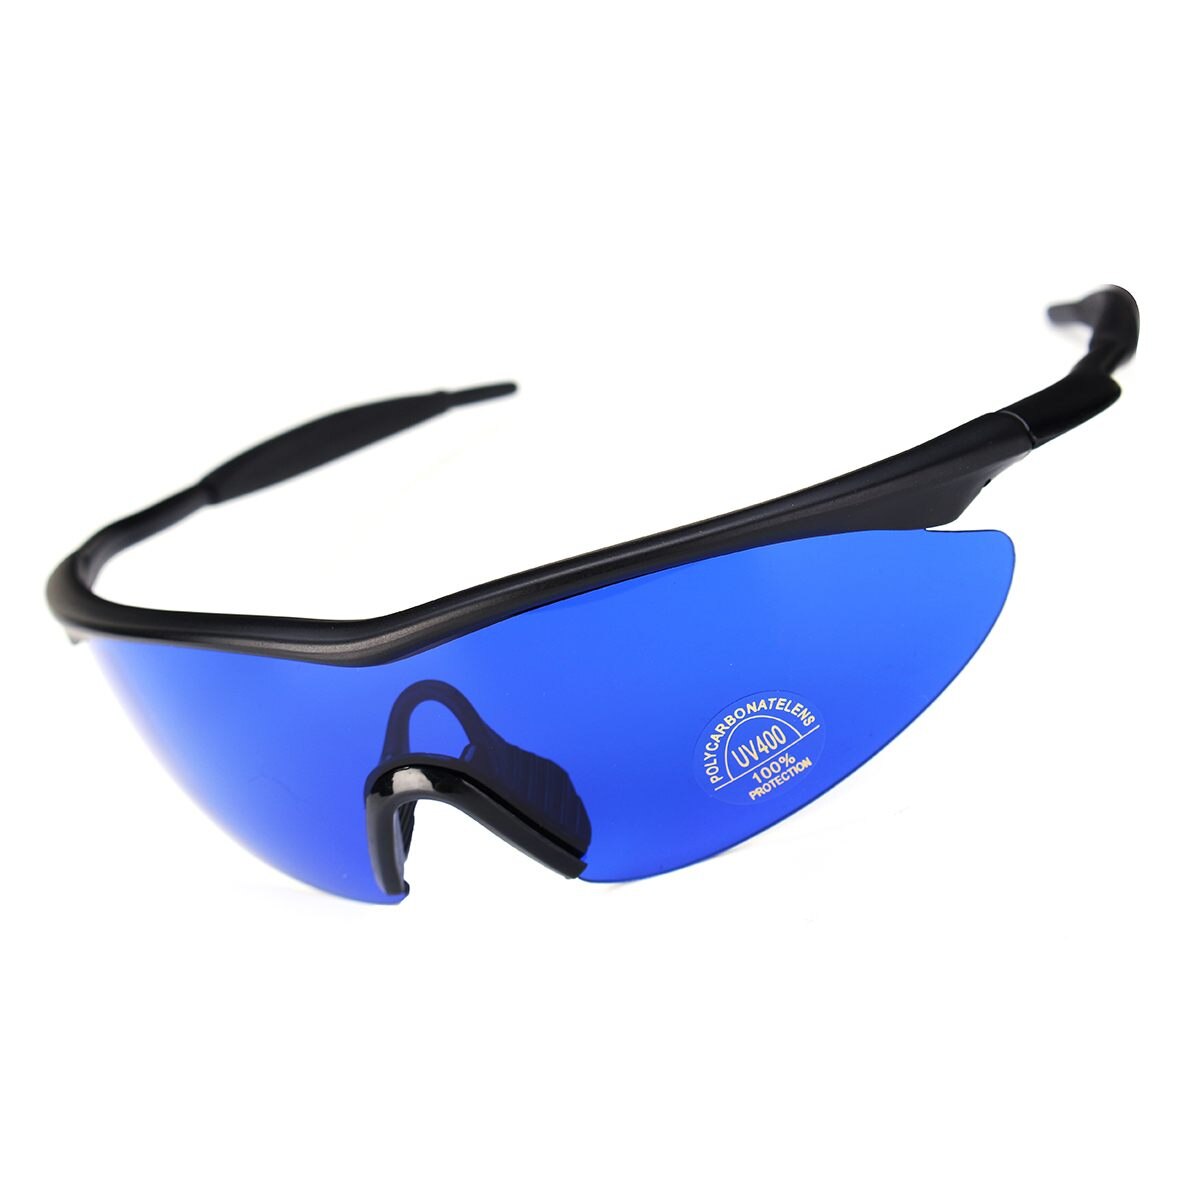 Mænd kvinder retro golfbold finder briller blå linse øjenbeskyttelse sport briller solbriller med boks golf tilbehør